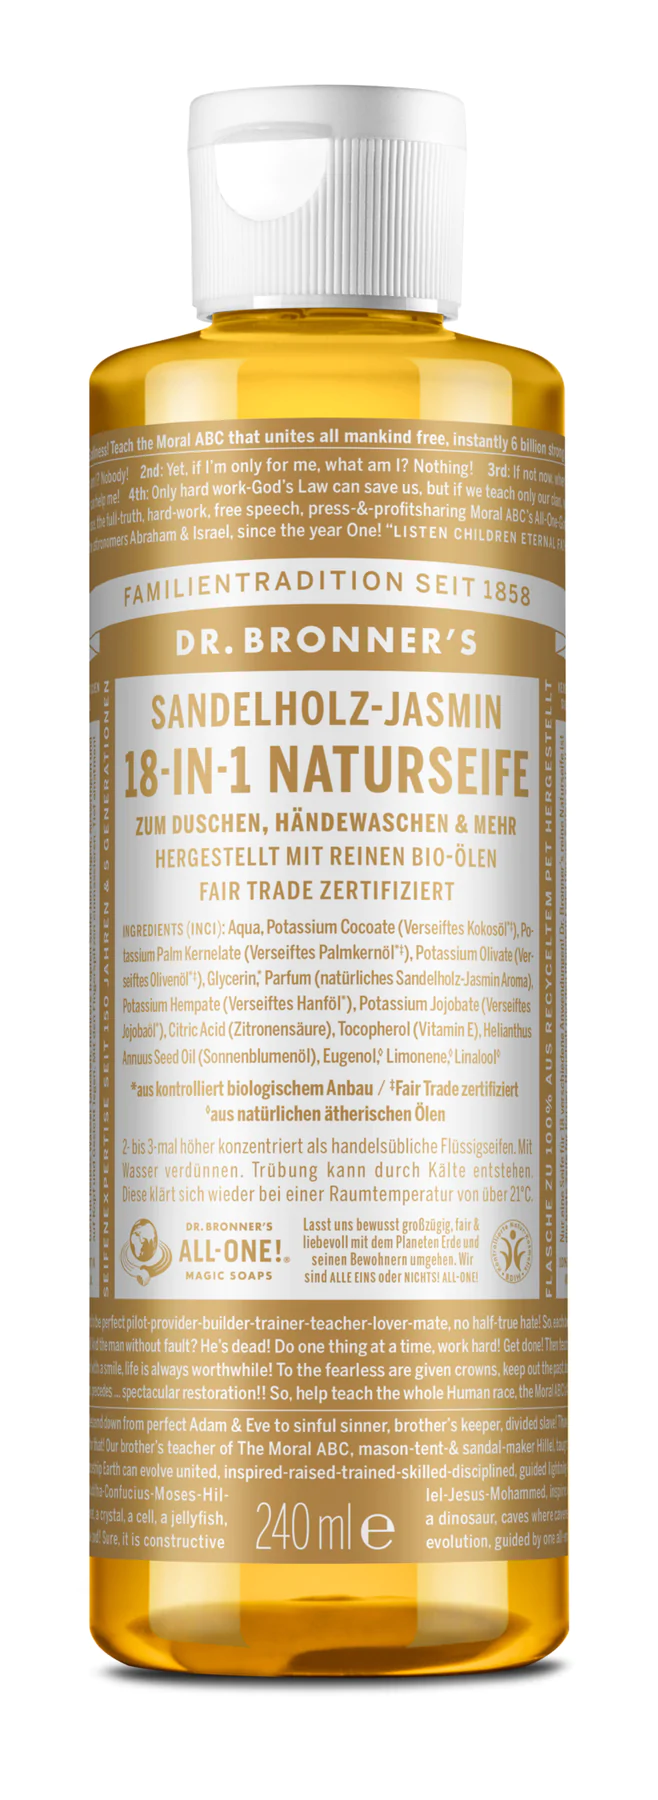 Dr. Bronner 18-IN-1 NATURSEIFE  Sandelholz-Jasmin 240ml